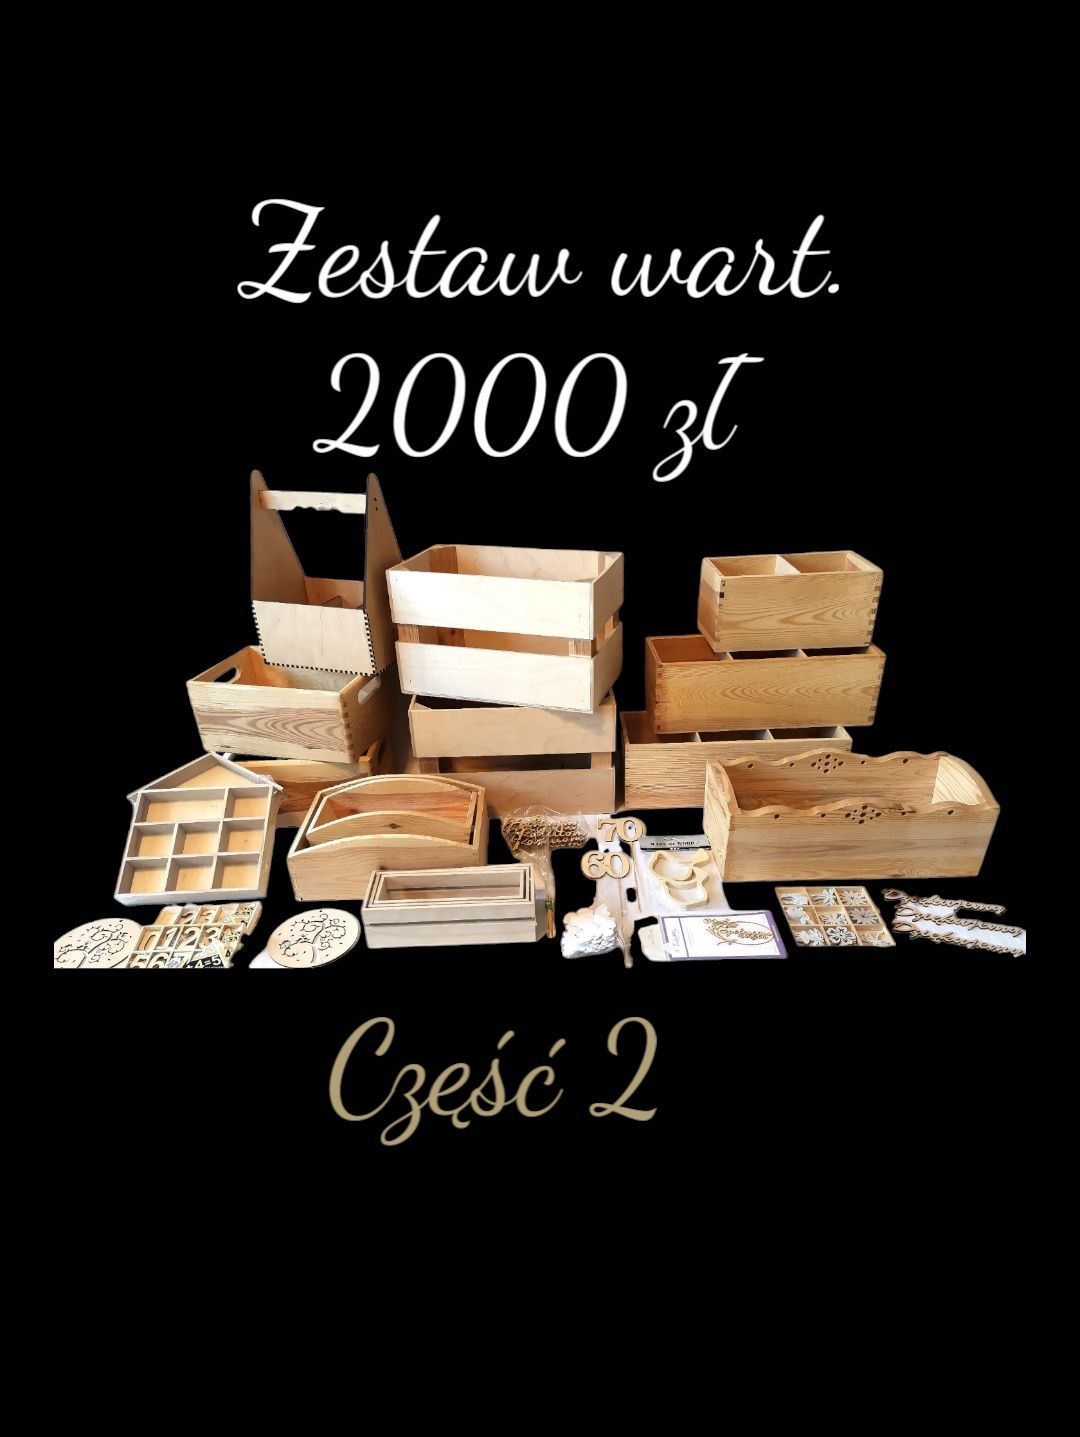 Zestaw wart. 2000 zł cz. 2 drewniane pojemniki vintage retro shabby